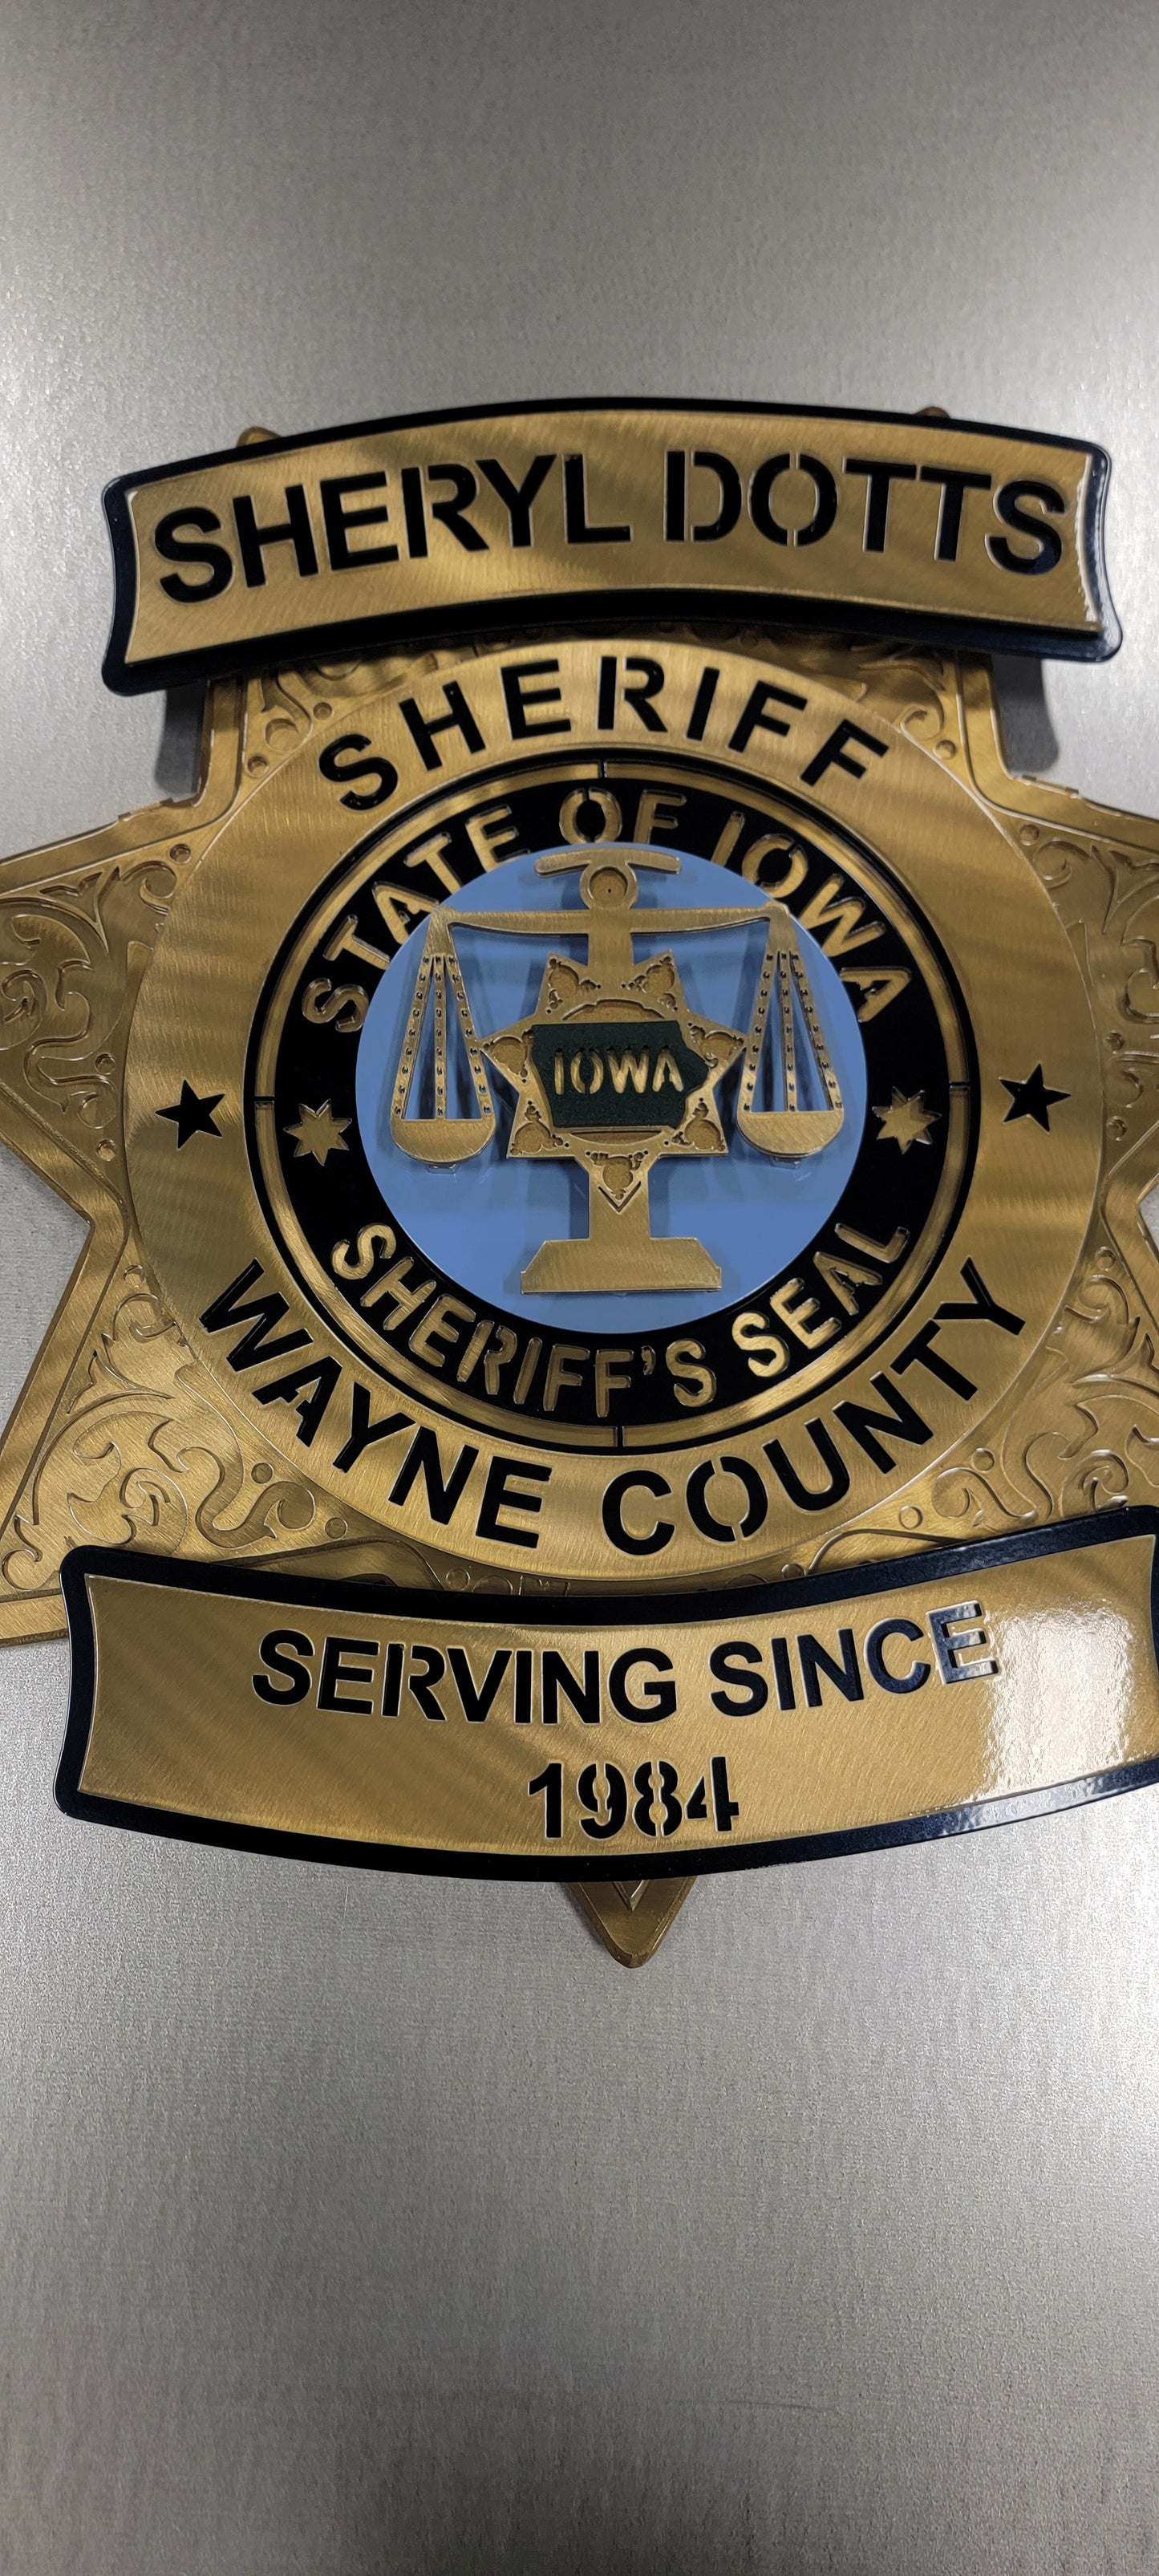 Wayne County Iowa Sheriff Sheryl Dotts